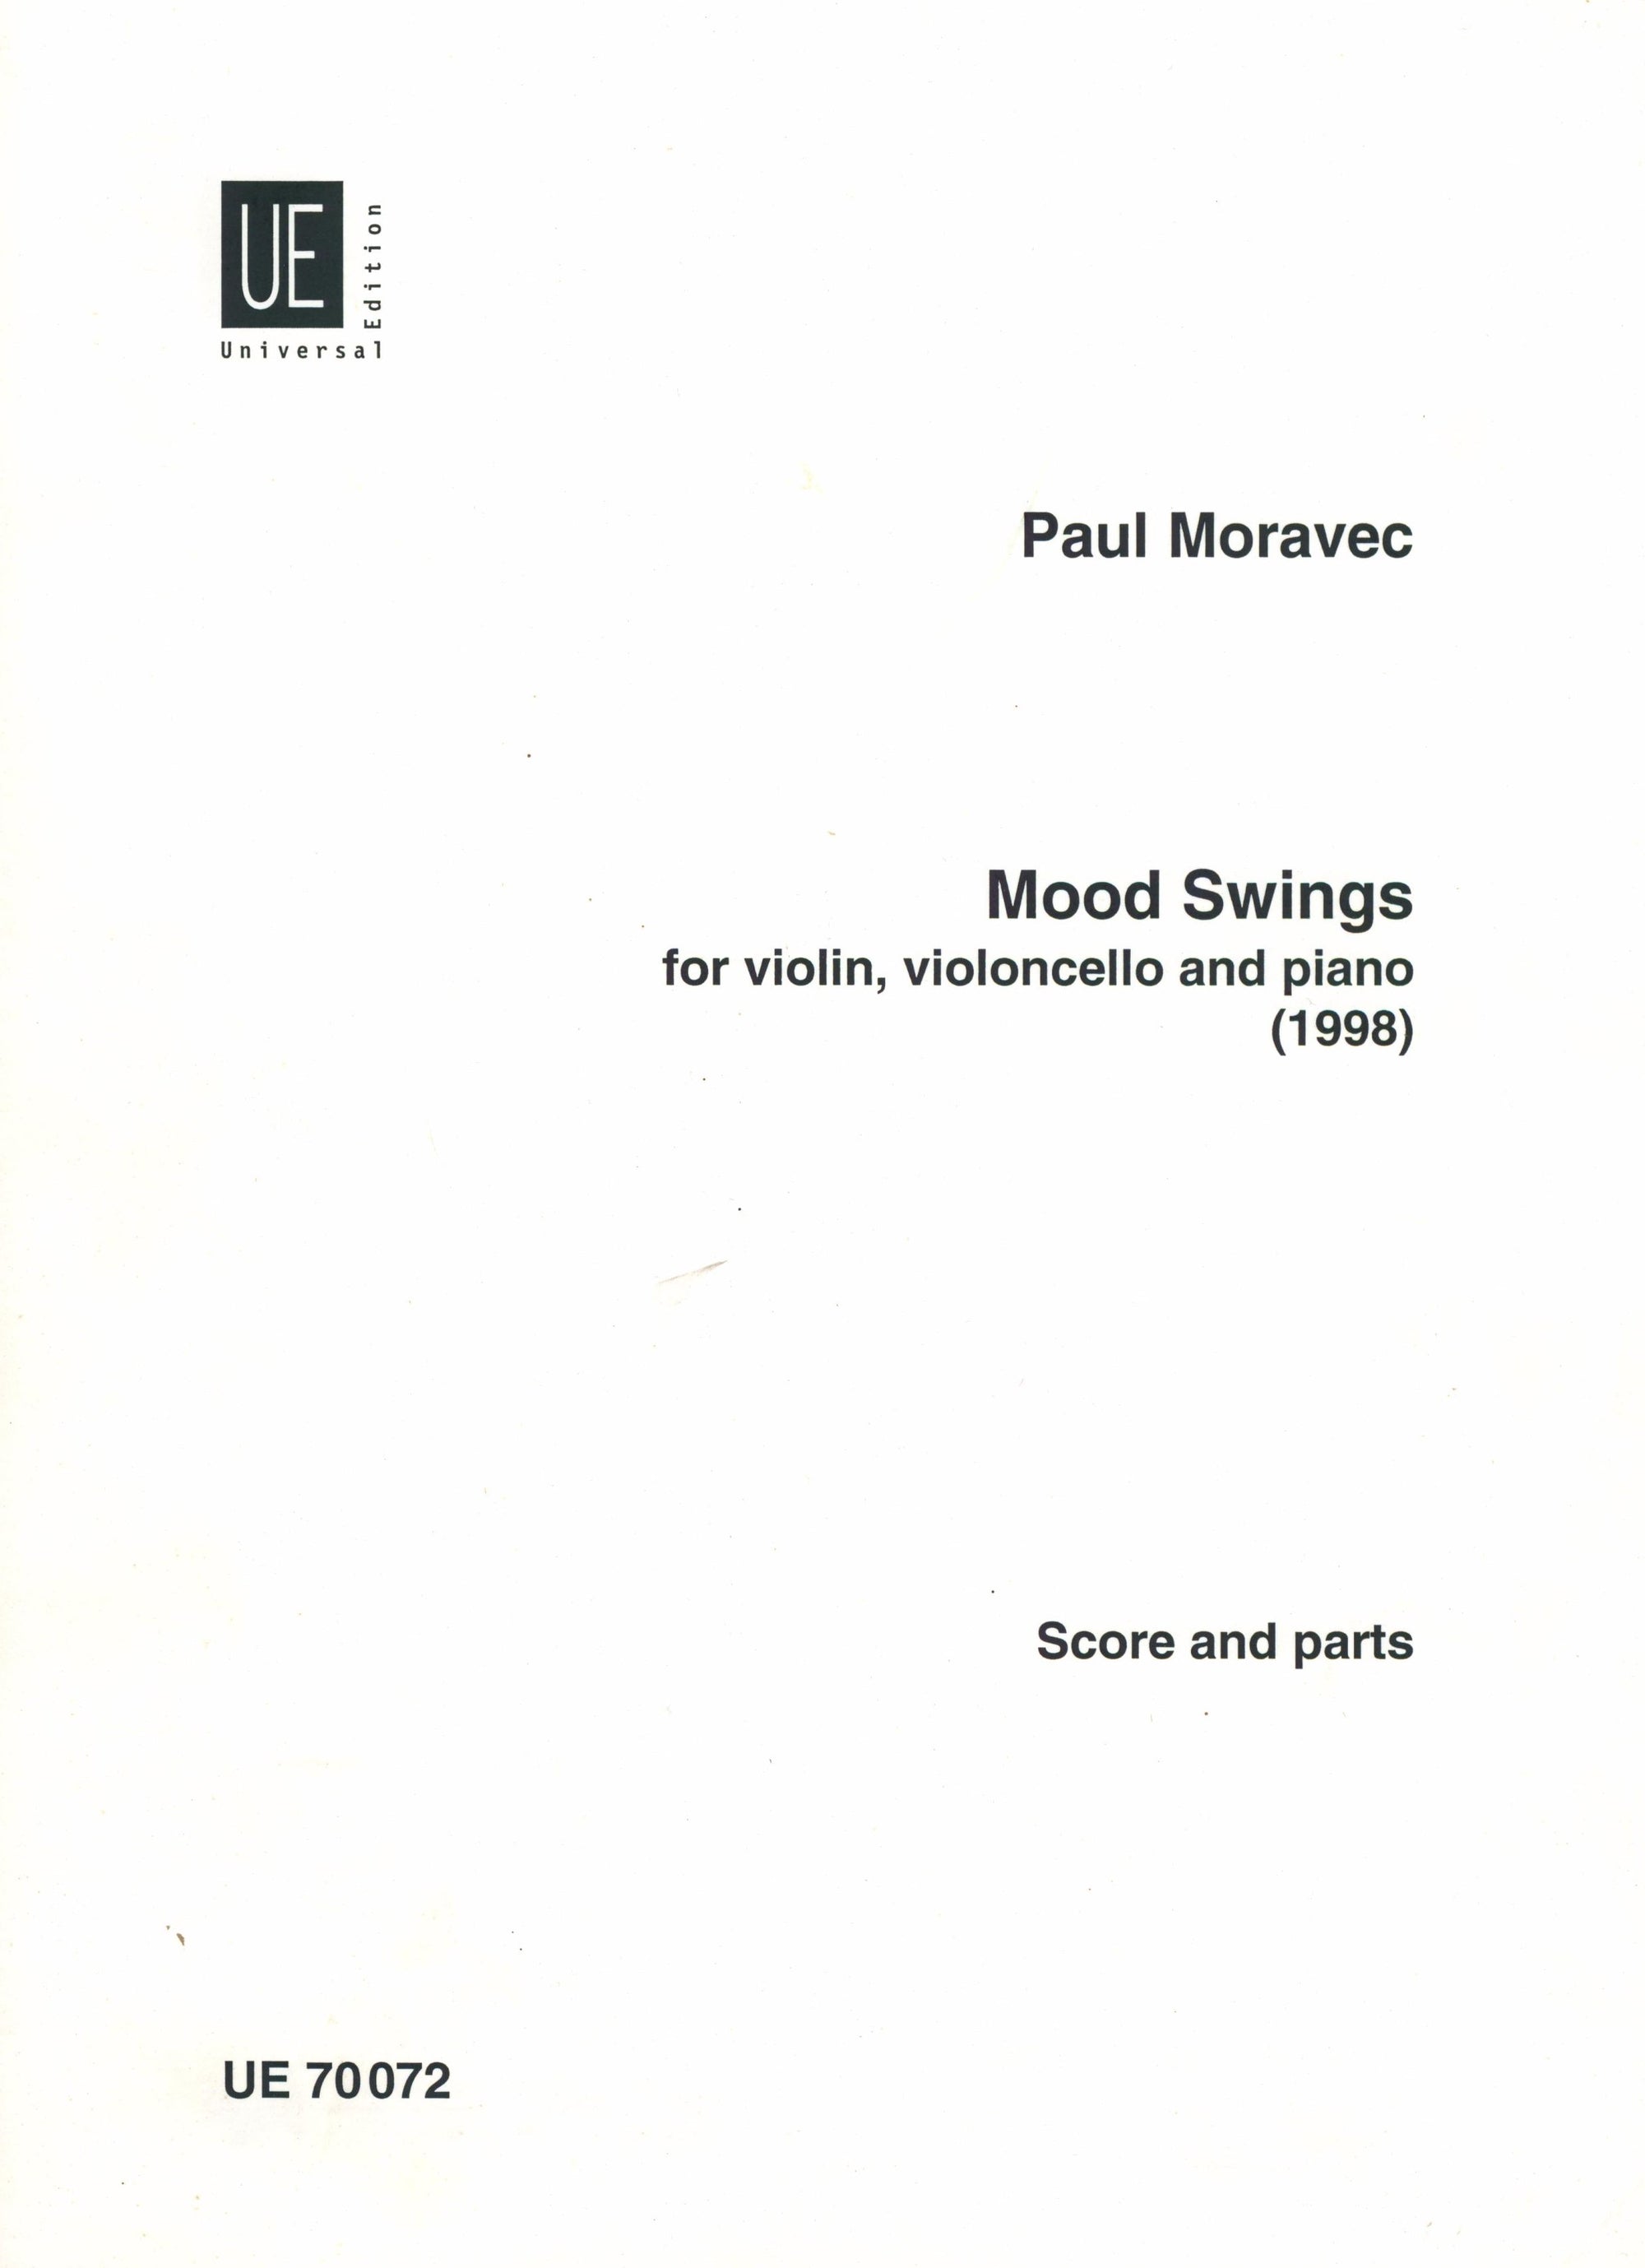 Moravec: Mood Swings